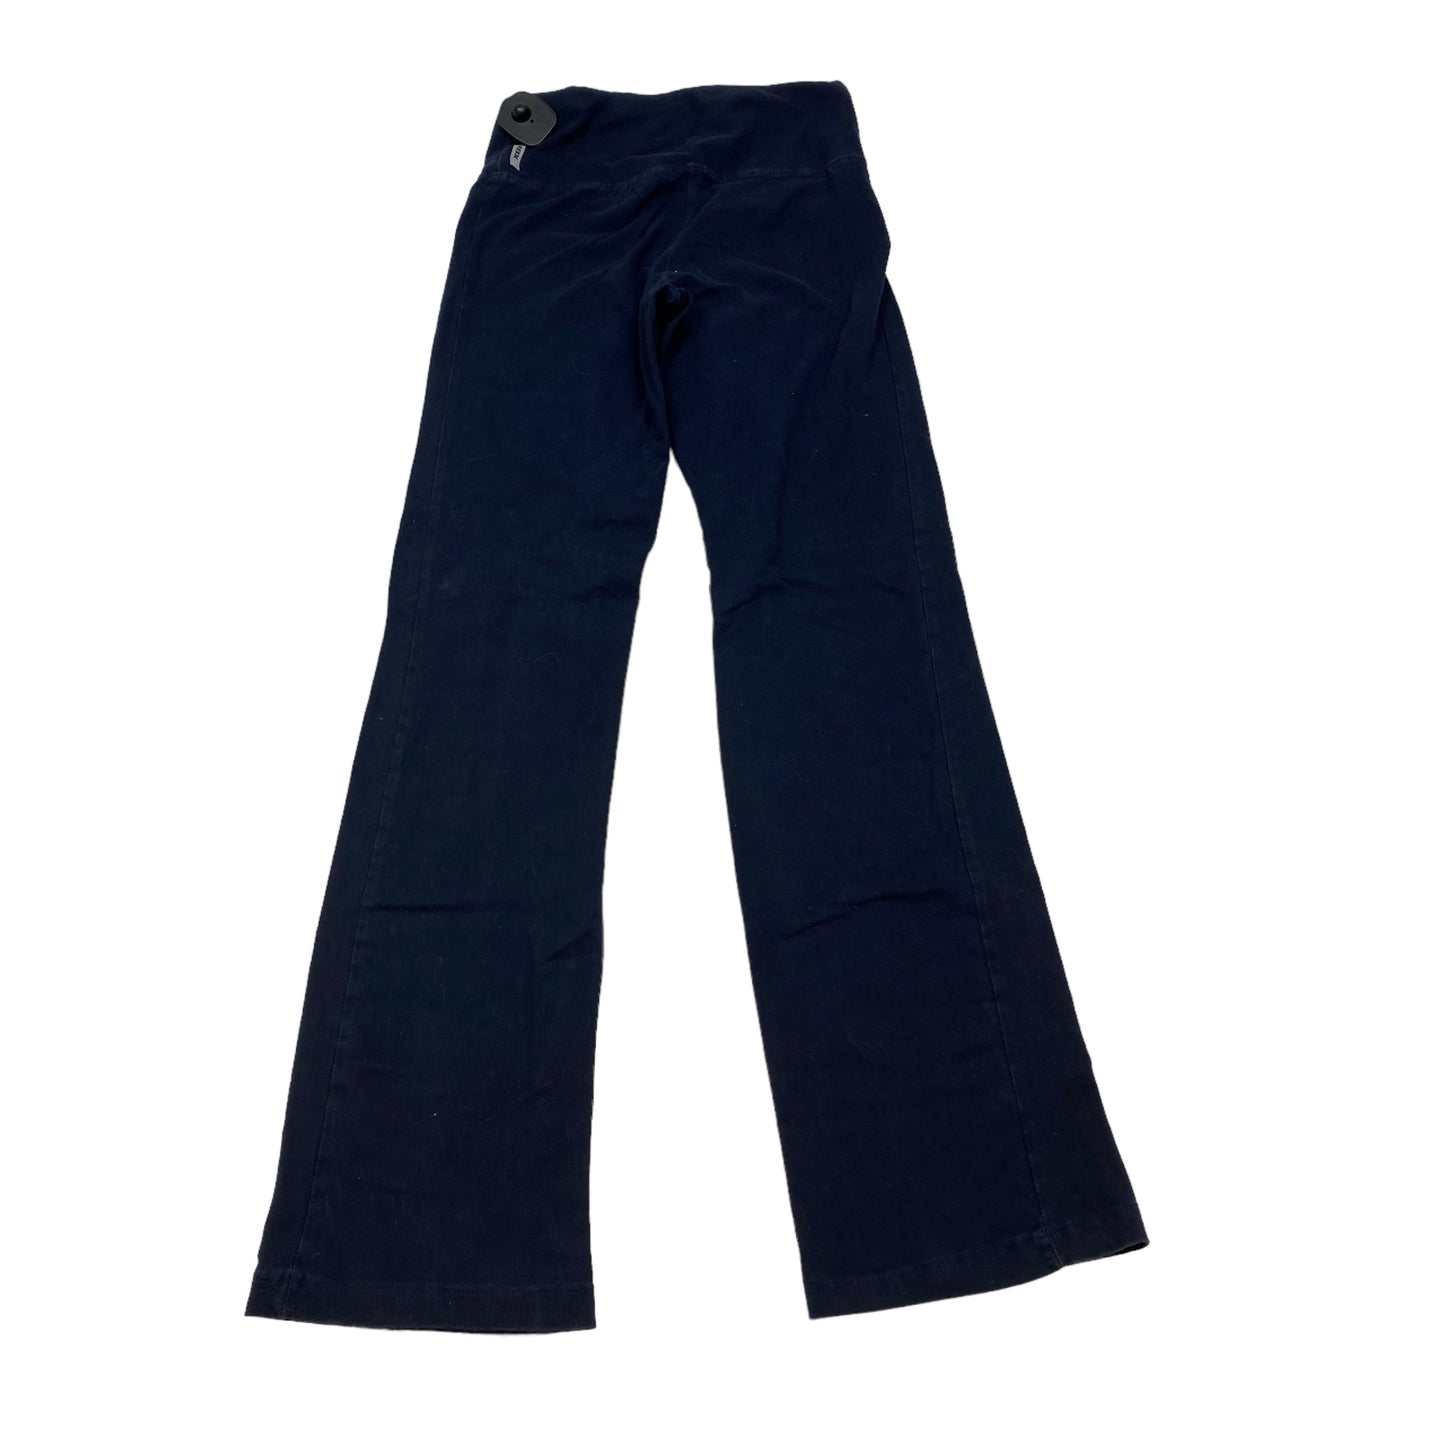 Blue Athletic Pants Rbx, Size S